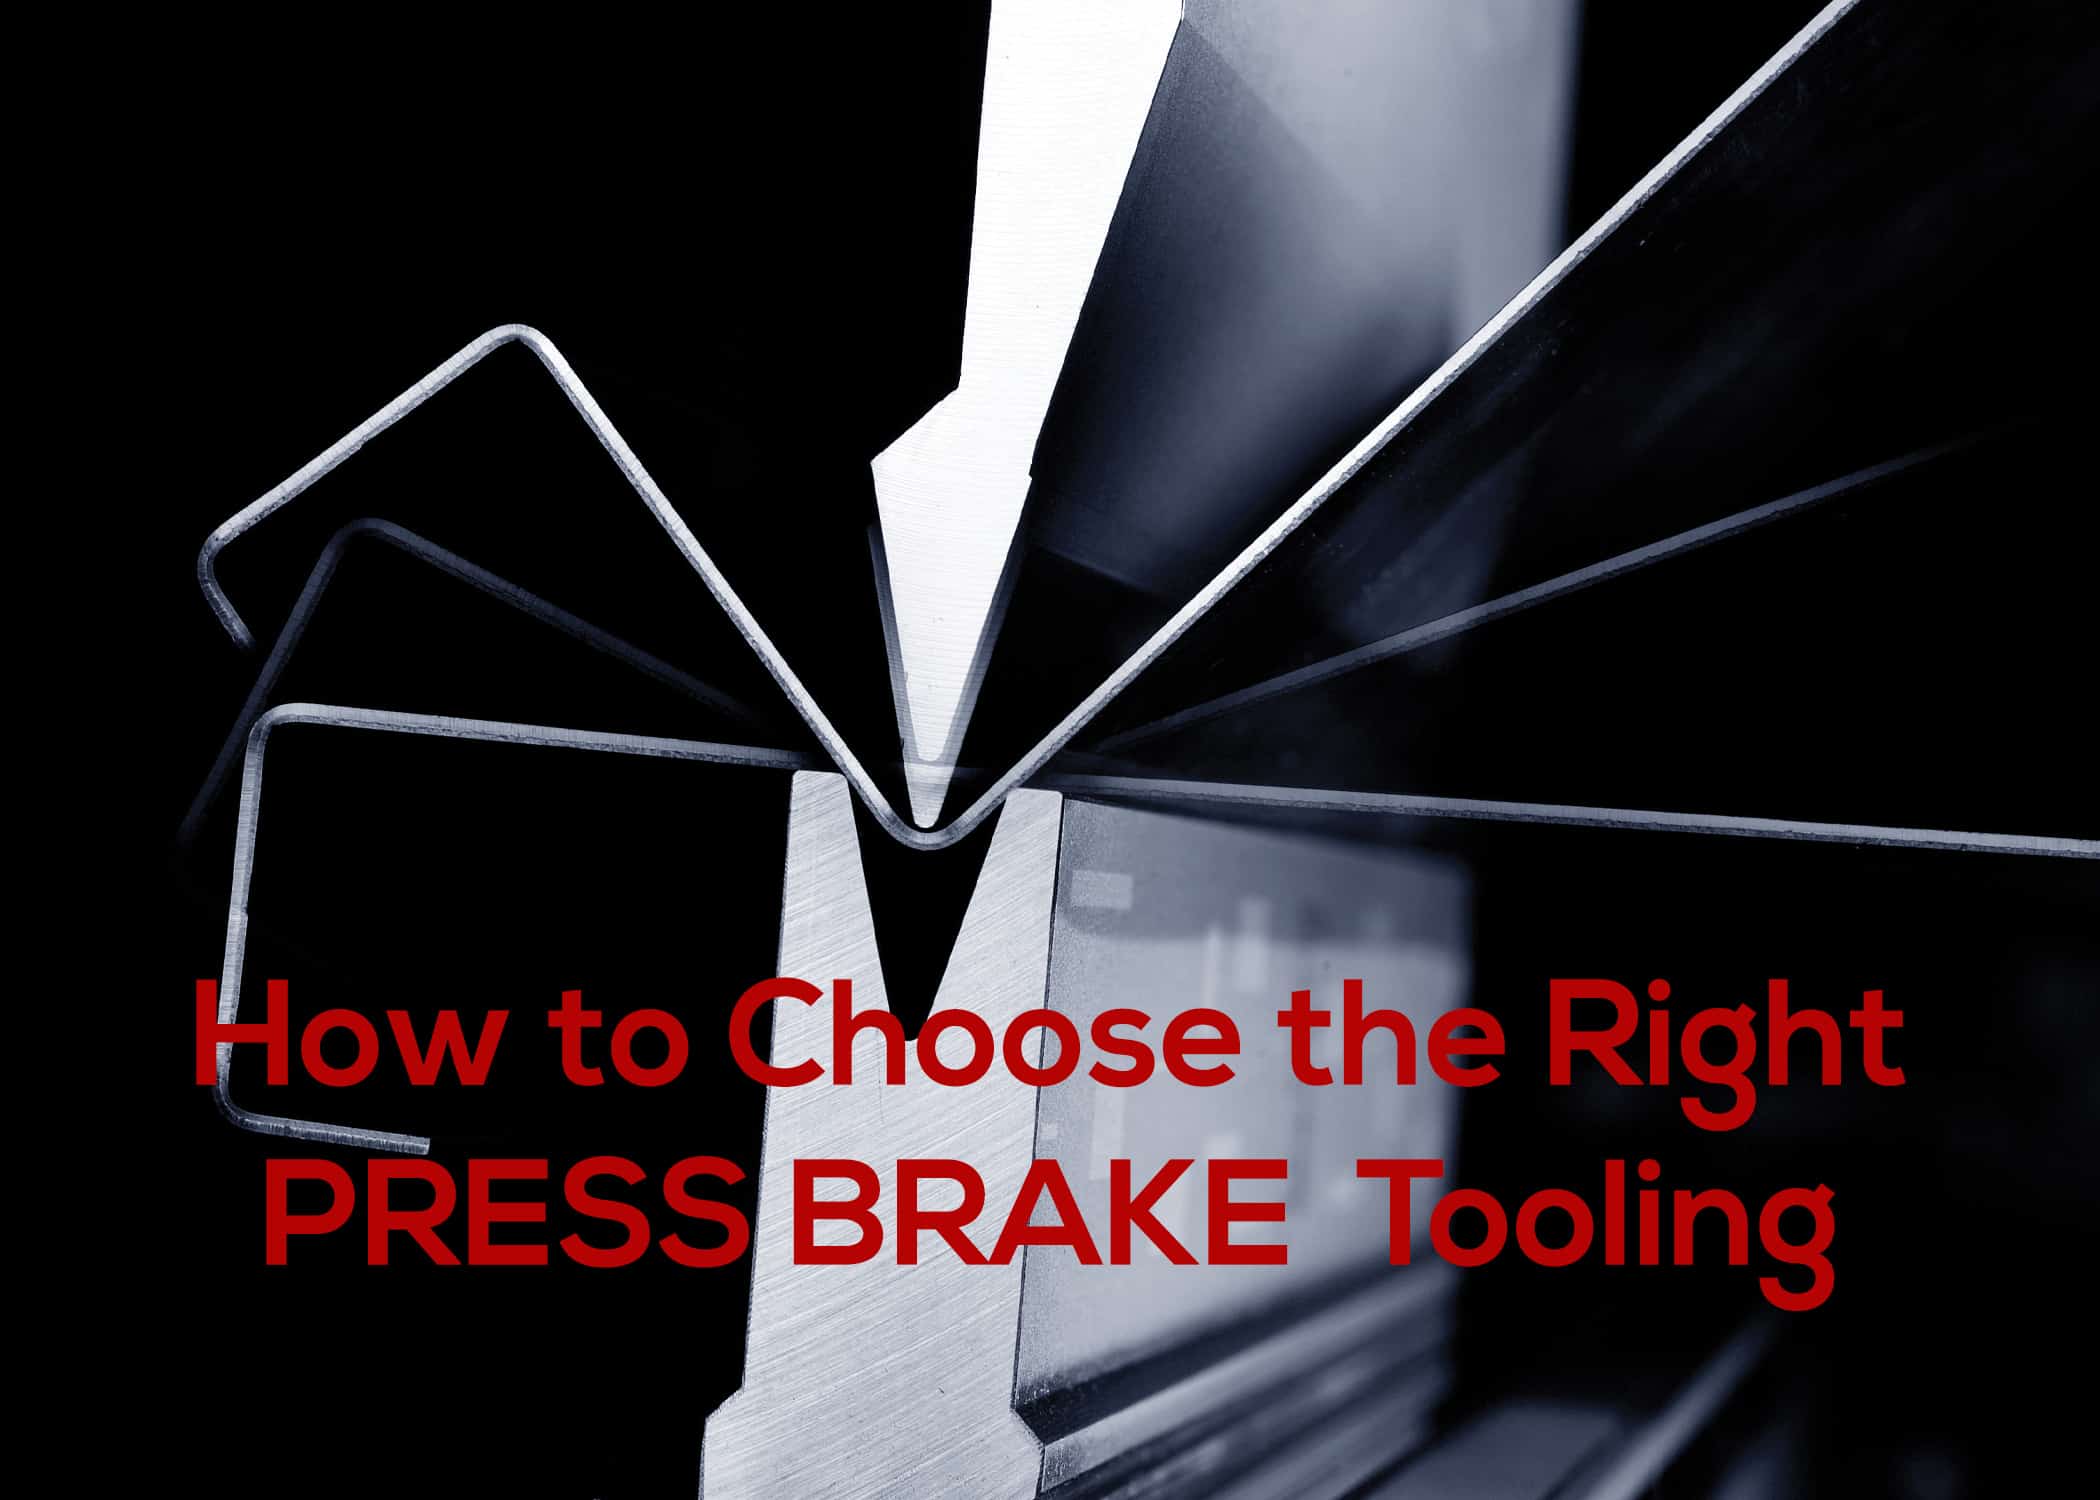 Press Brake Tooling